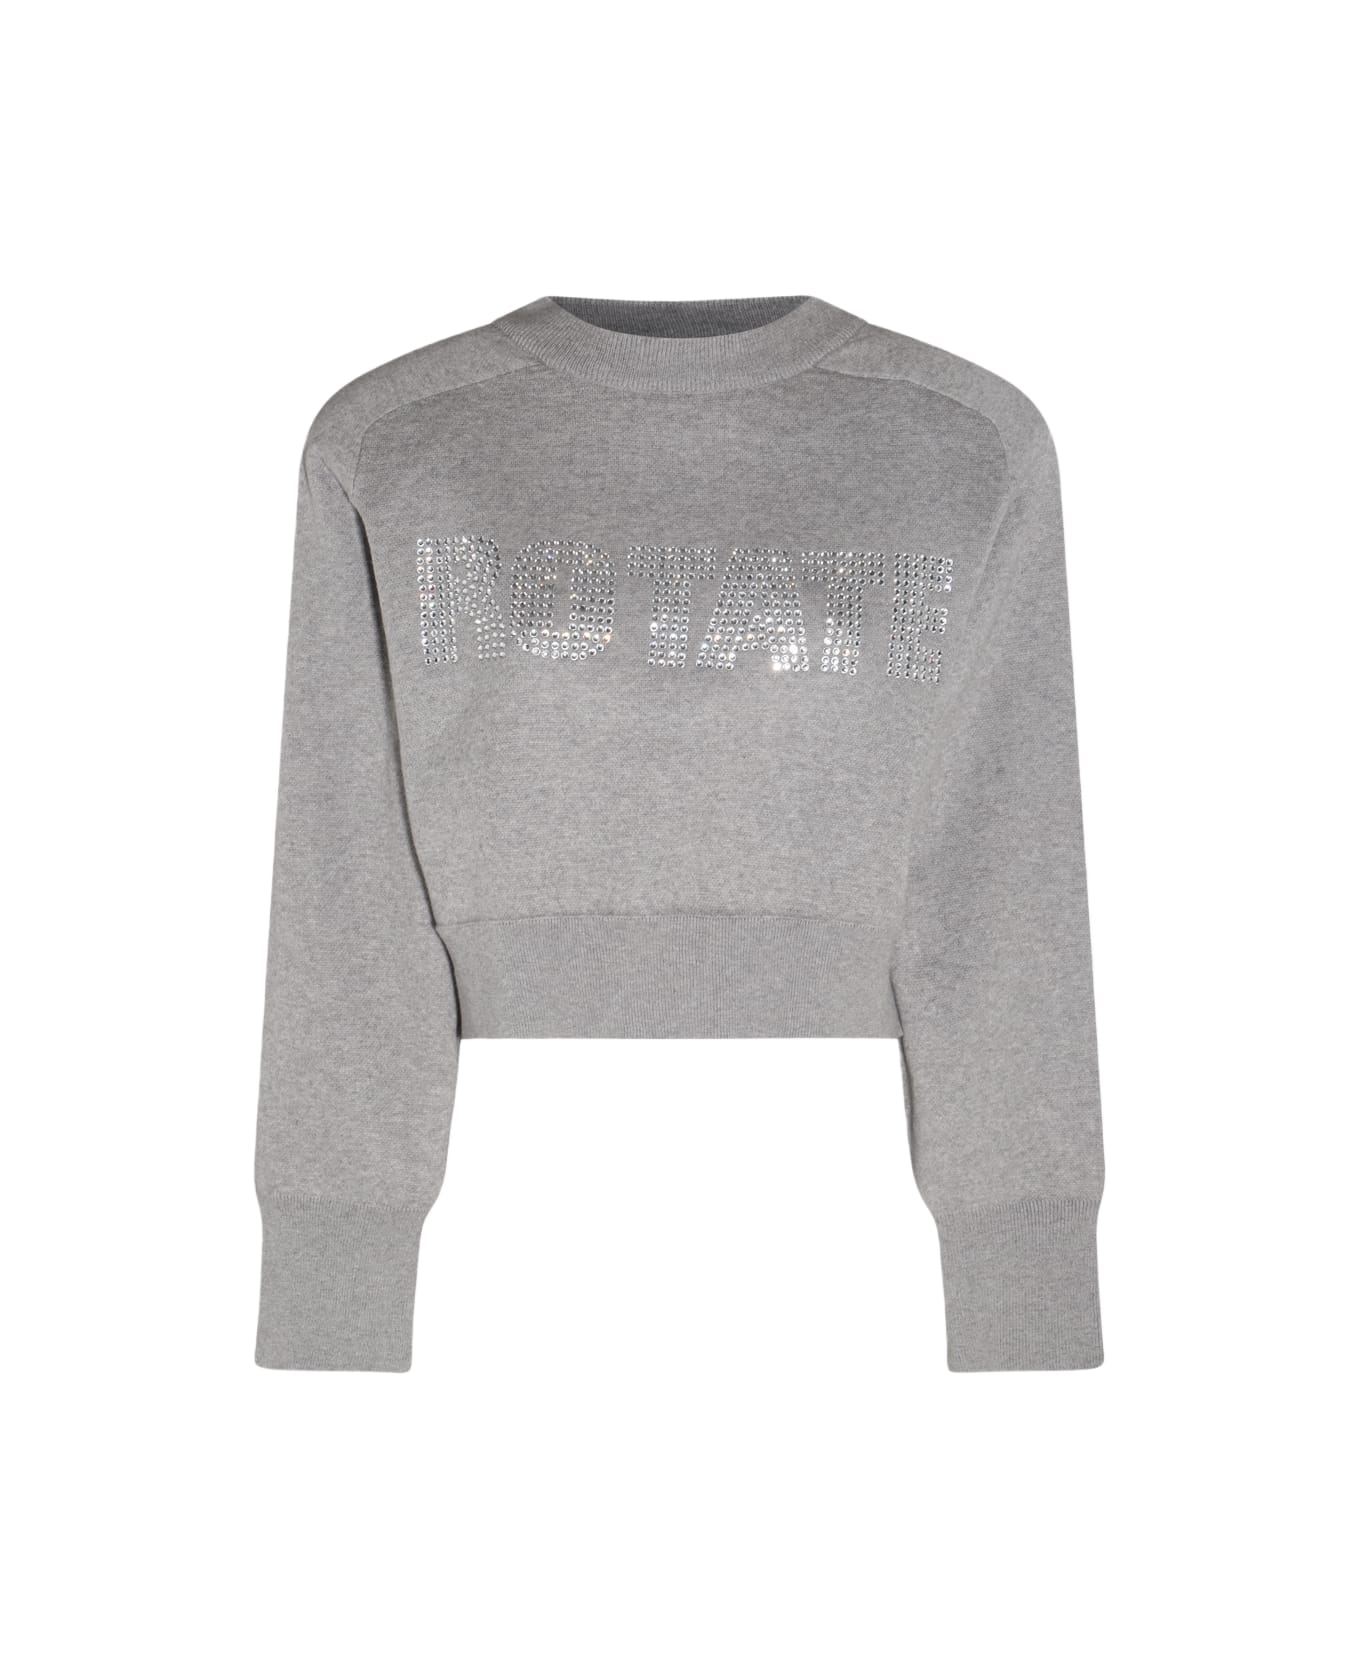 Rotate by Birger Christensen Lunar Rock Cotton And Cashmere Blend Sweater - LUNAR ROCK